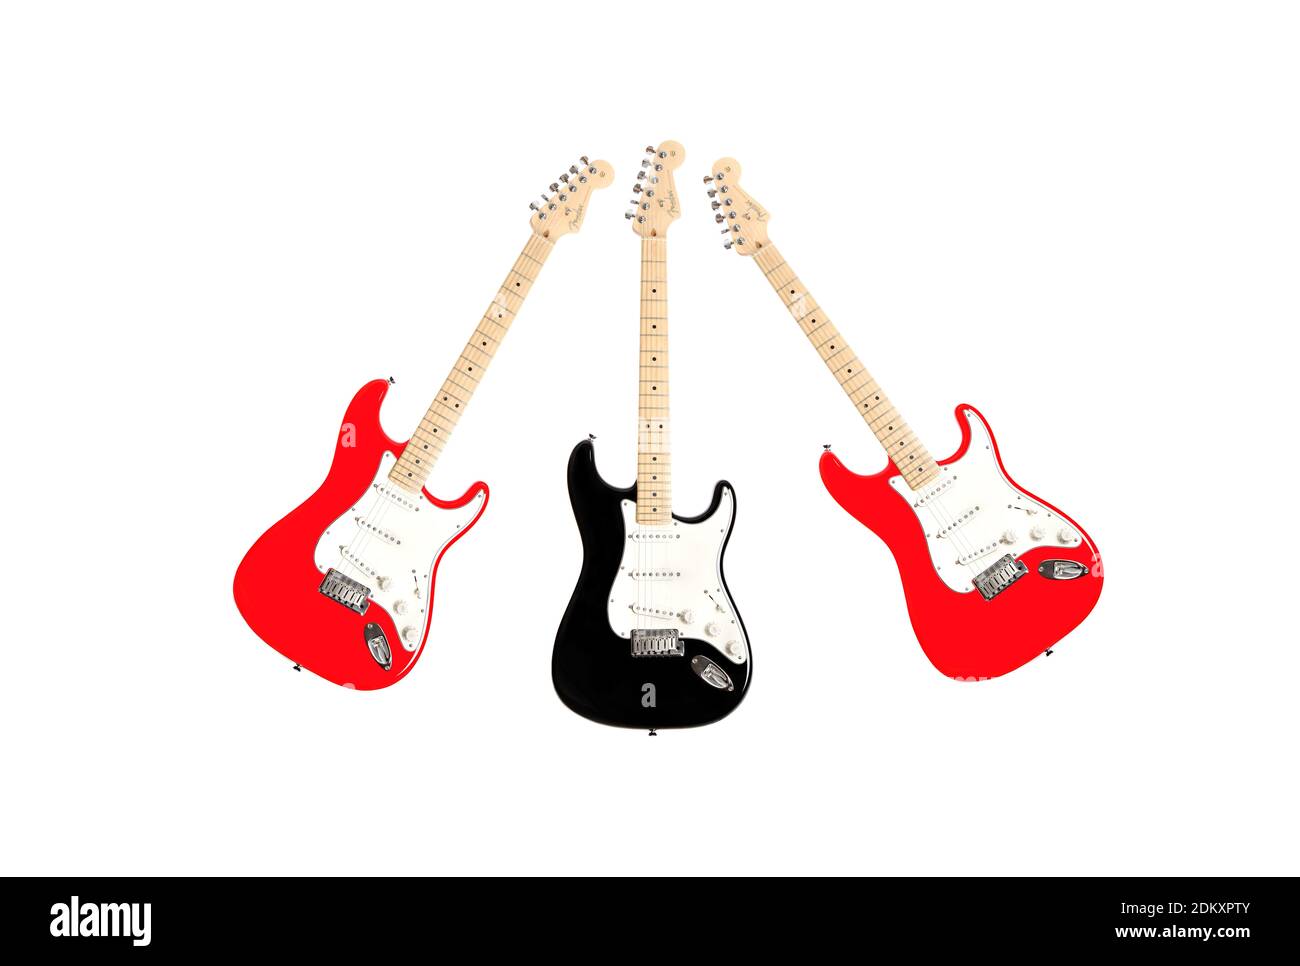 Strat - Fender Stratocaster guitarras eléctricas Foto de stock